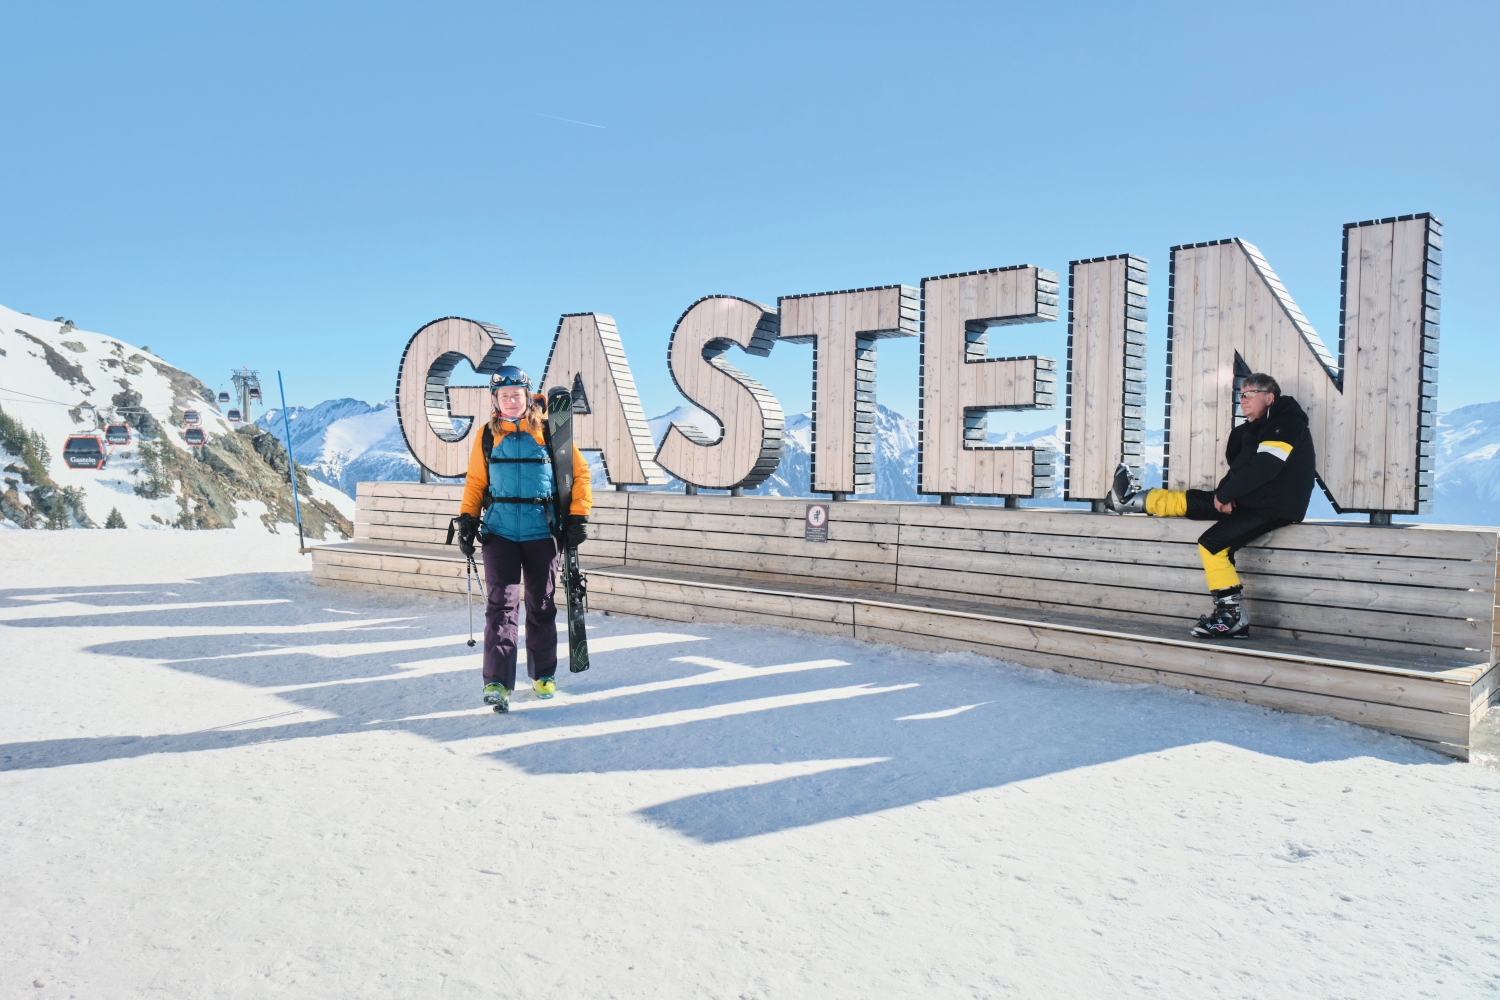 Skiers next to Gastein sign